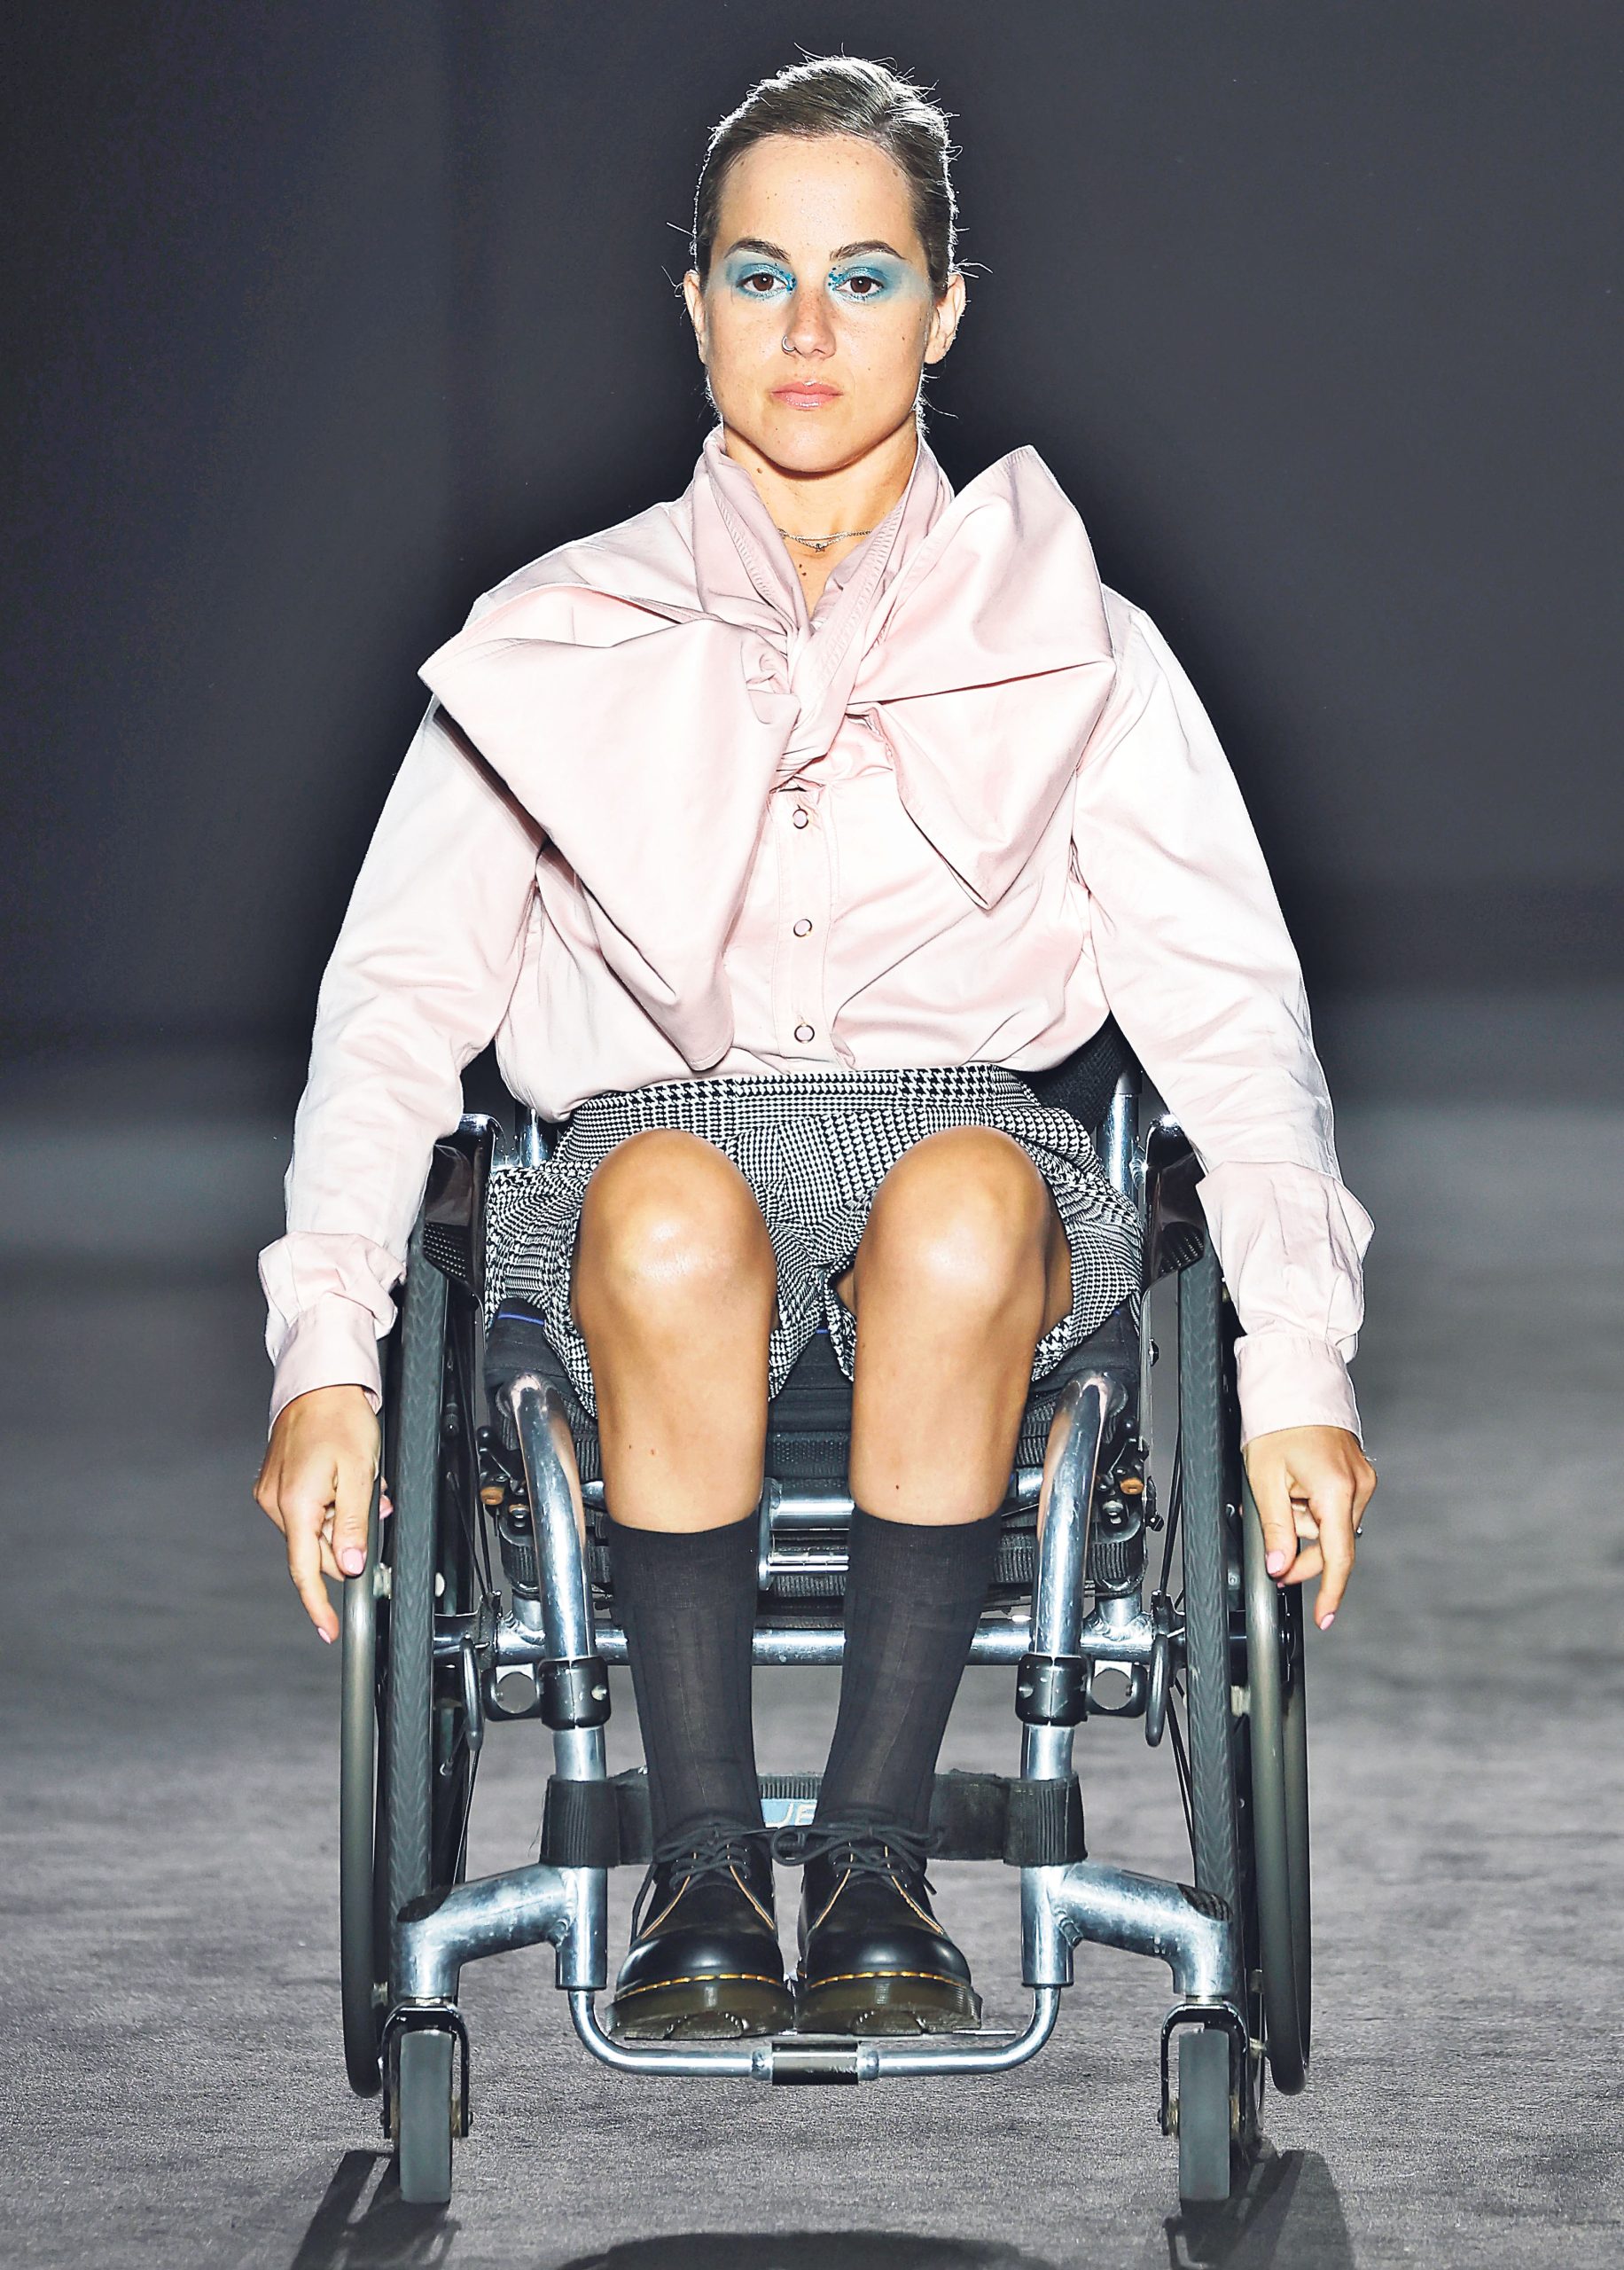 Ari Balmes, nadadora paralímpica de Torelló, va desfilar per una marca de moda inclusiva a la 080 Barcelona Fashion